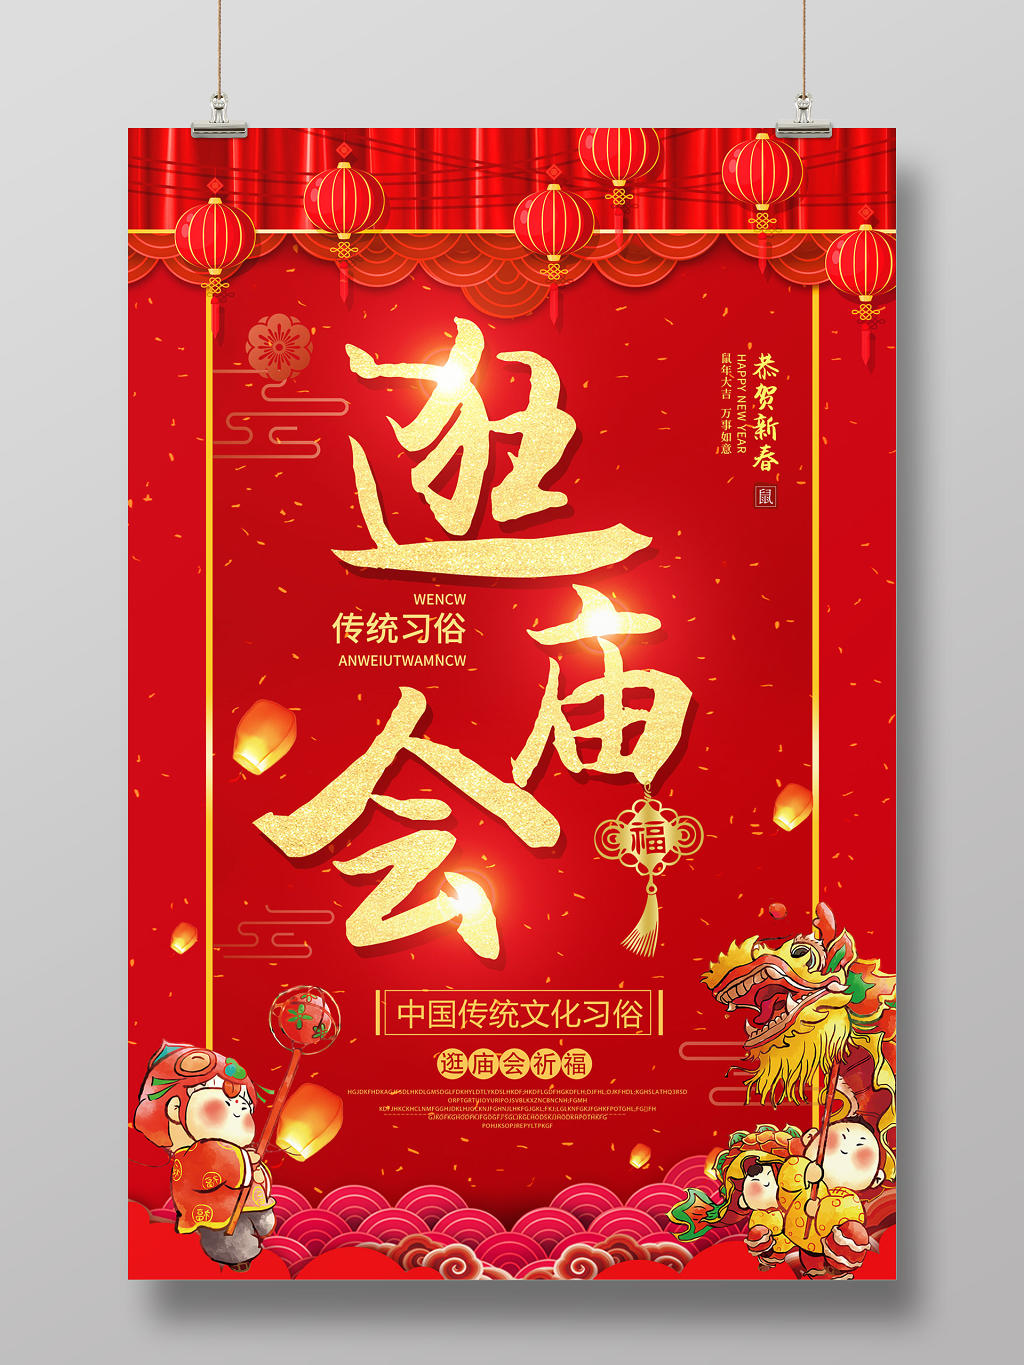 春节庙会红色缤纷中国风传统习俗舞龙逛庙会海报